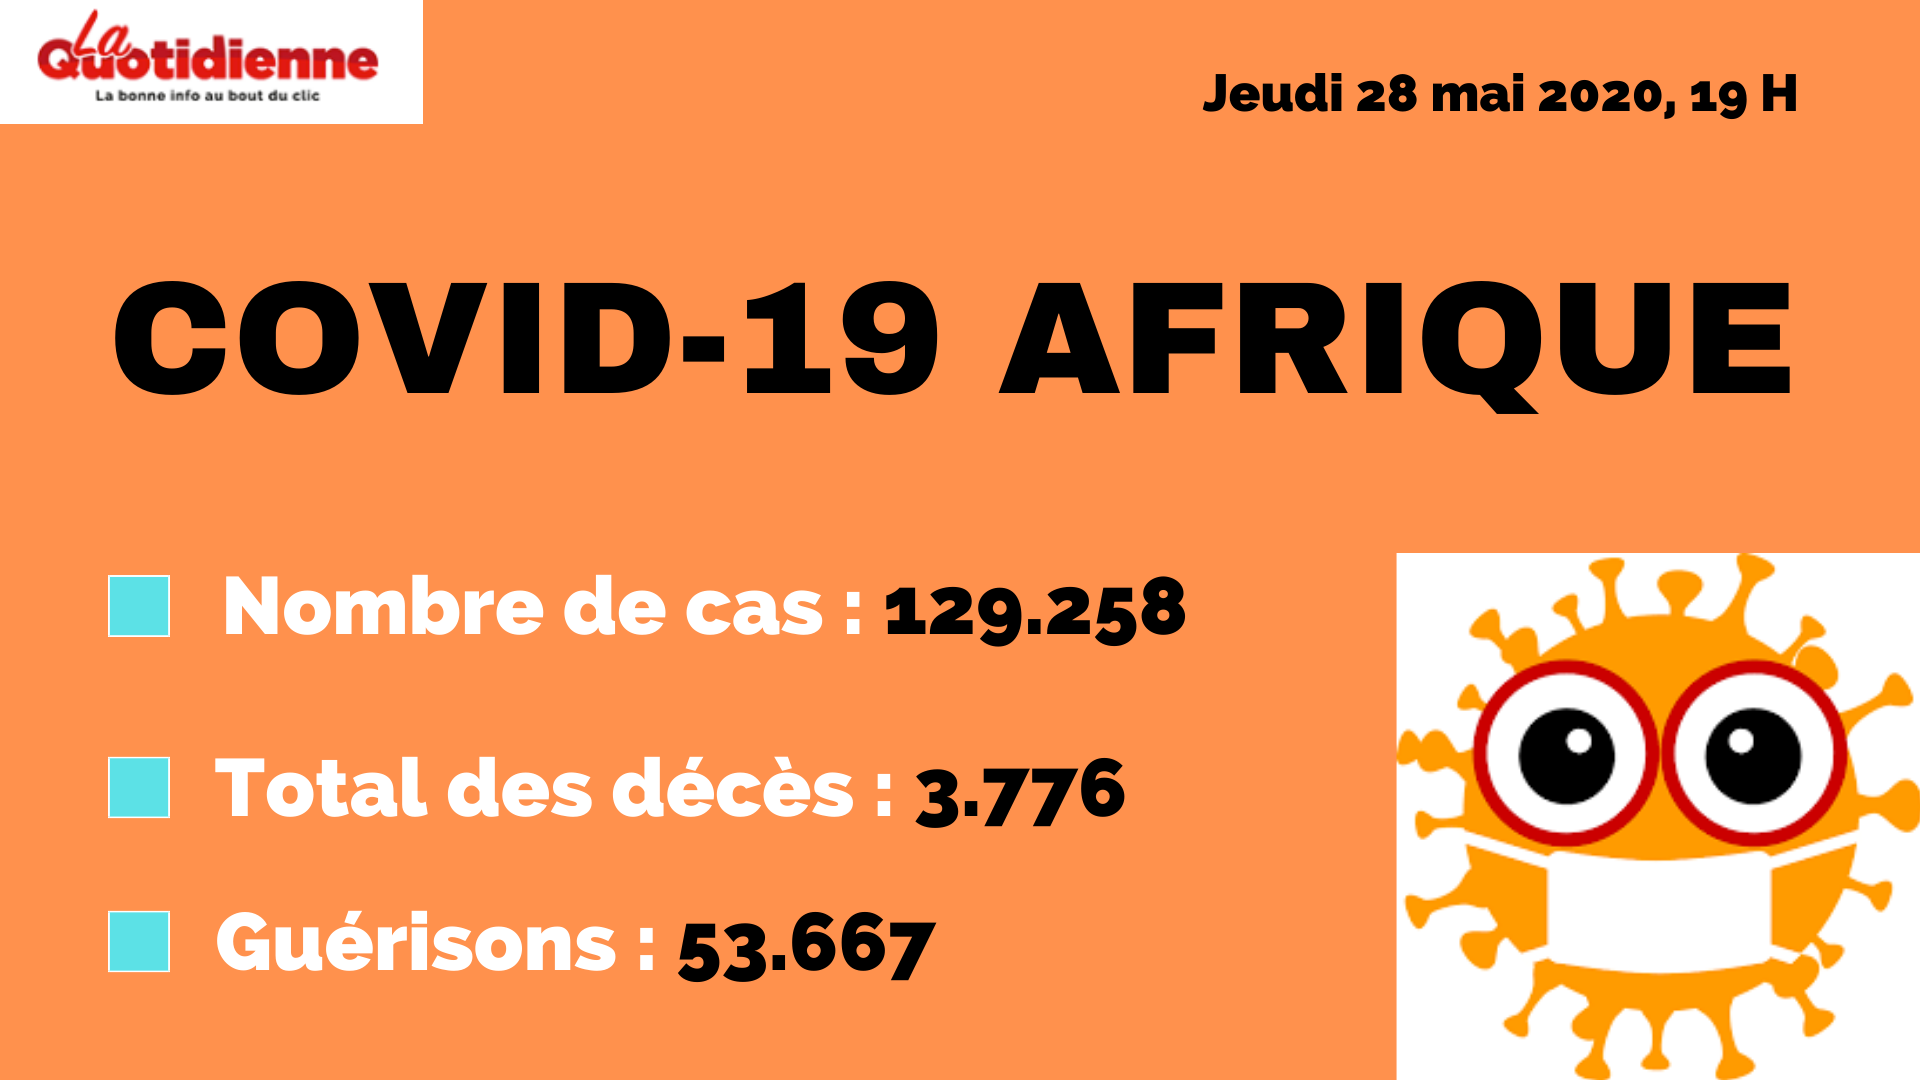 Covid-19 : Bilan de la pandémie en Afrique, le 28 mai